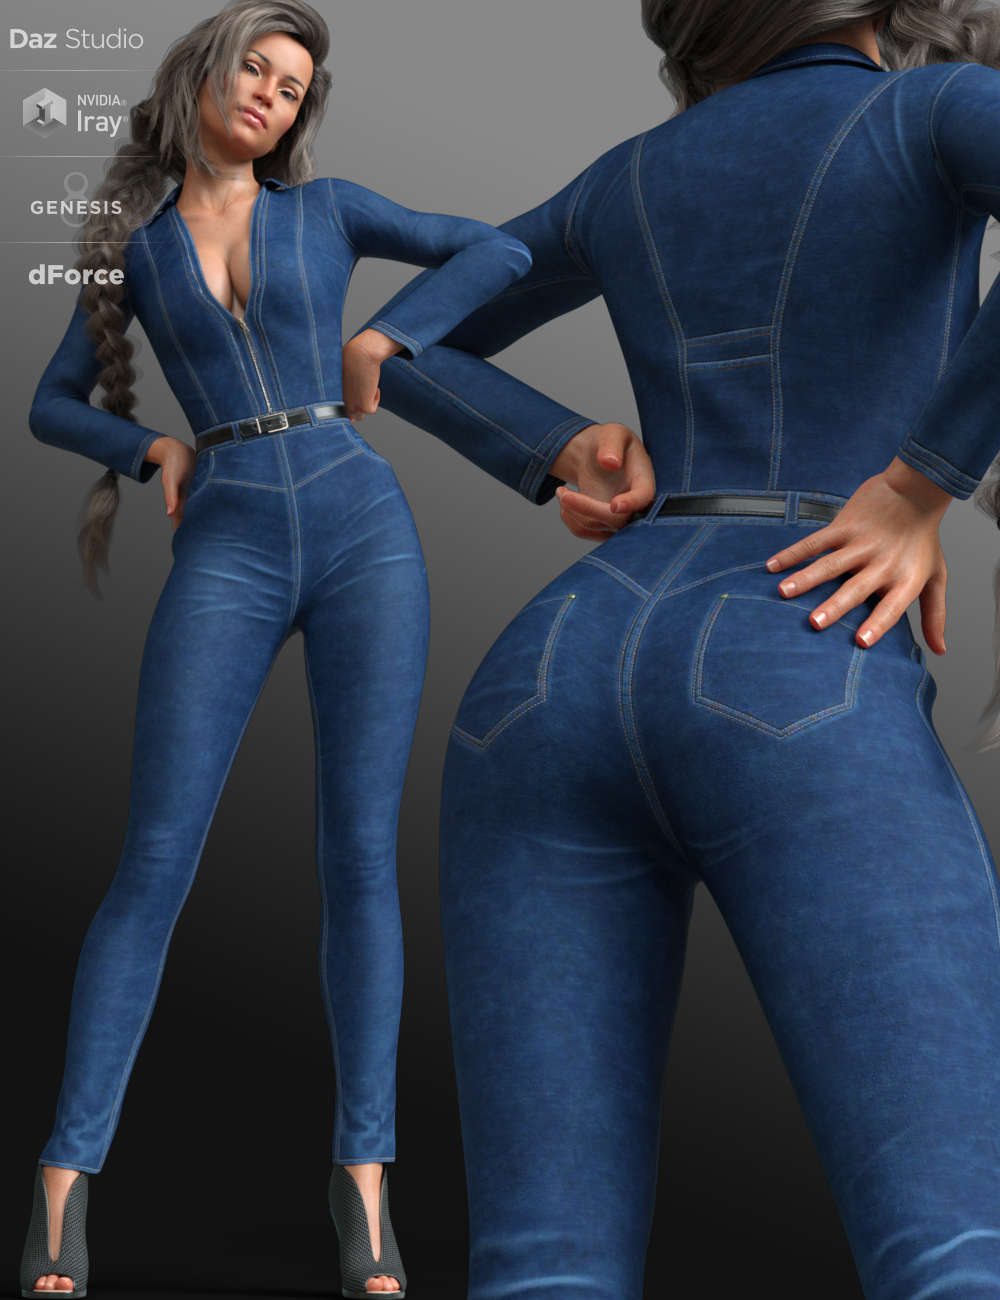 dForce Mod Jumpsuit Outfit for Genesis 8 Female(s) by: Nikisatez, 3D Models by Daz 3D